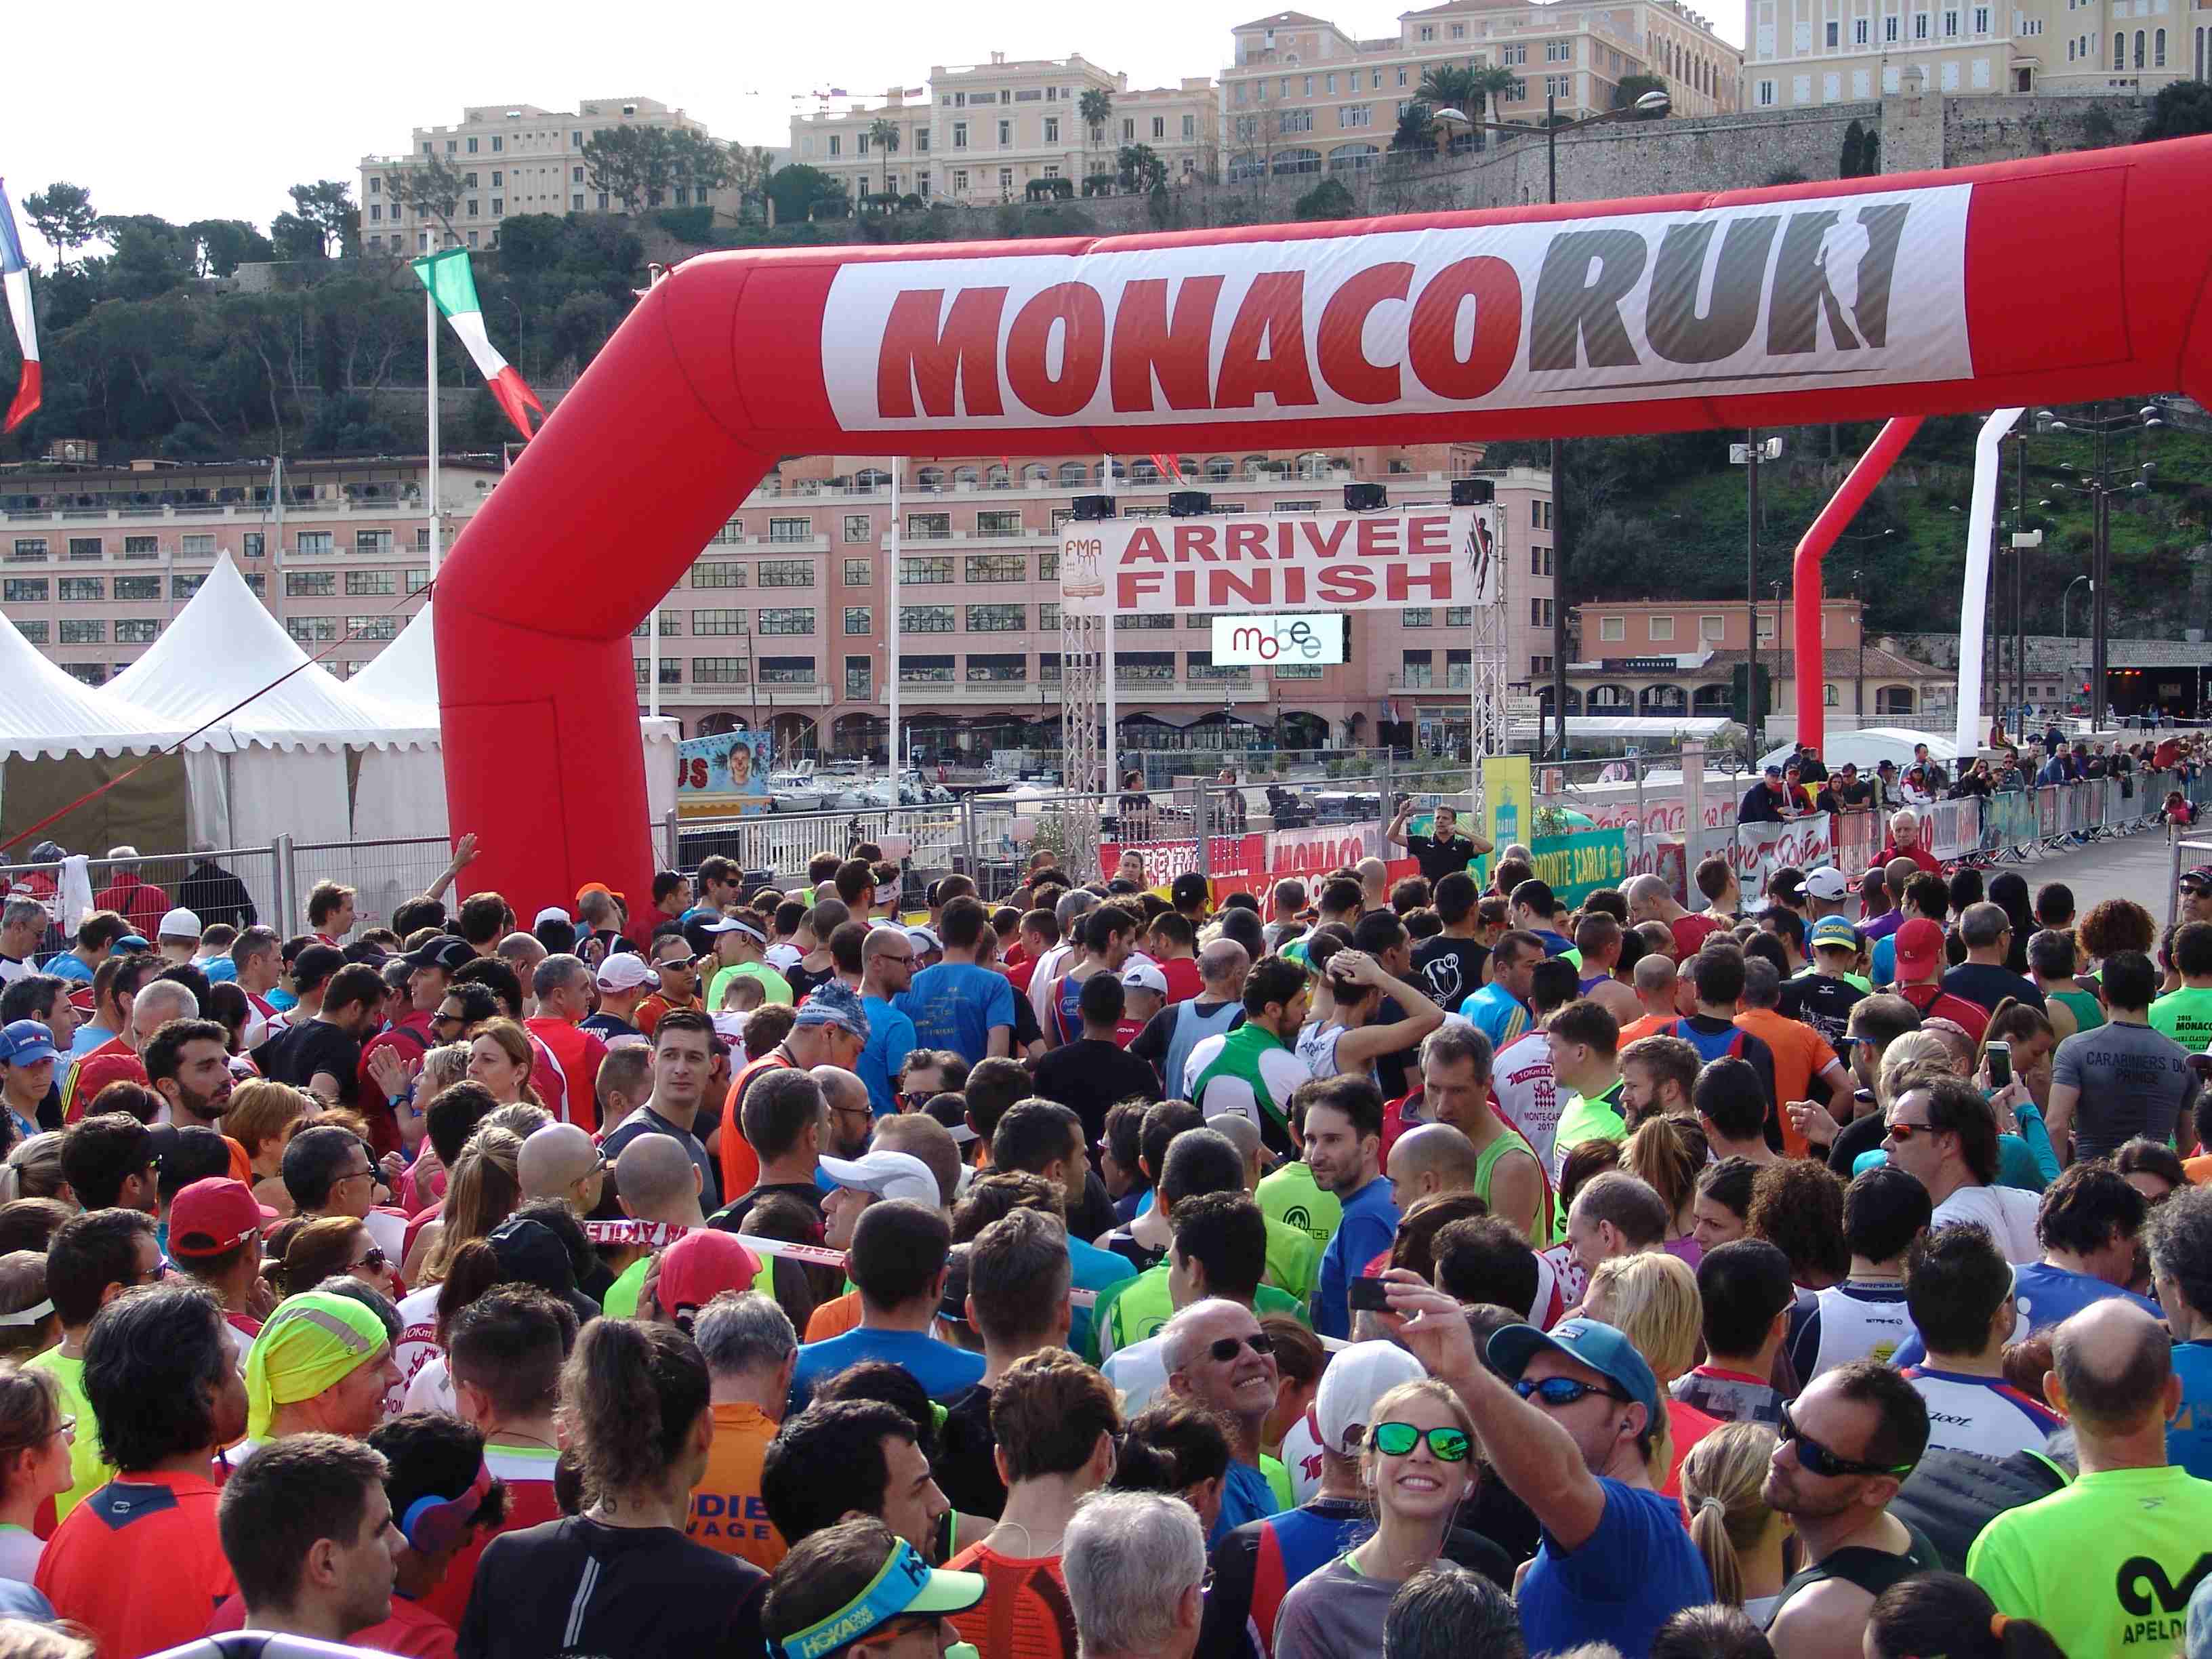 La partenza di Monaco Run, Corsa per diettanti e sportivi organizzata dalla Federazione Monegasca di Atletica